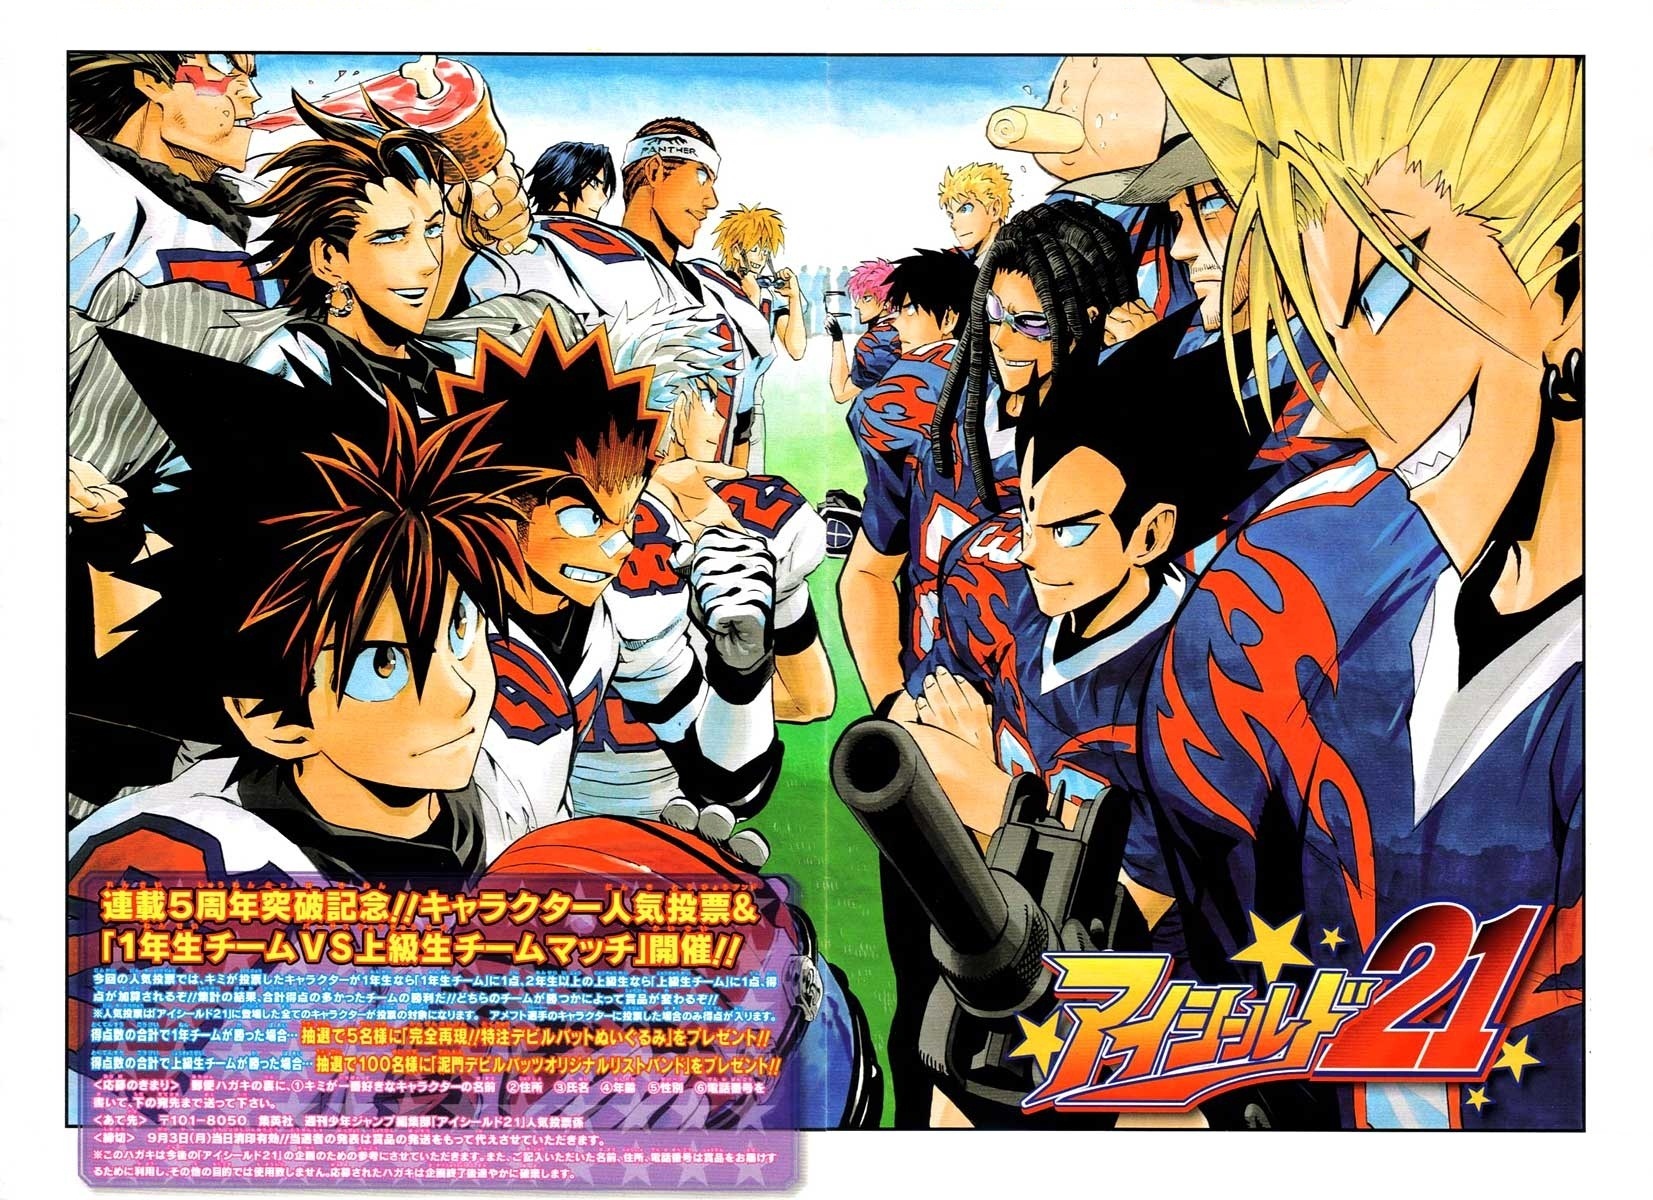 Anime dan Manga bertemakan sport yang keren dan inspiratif abis